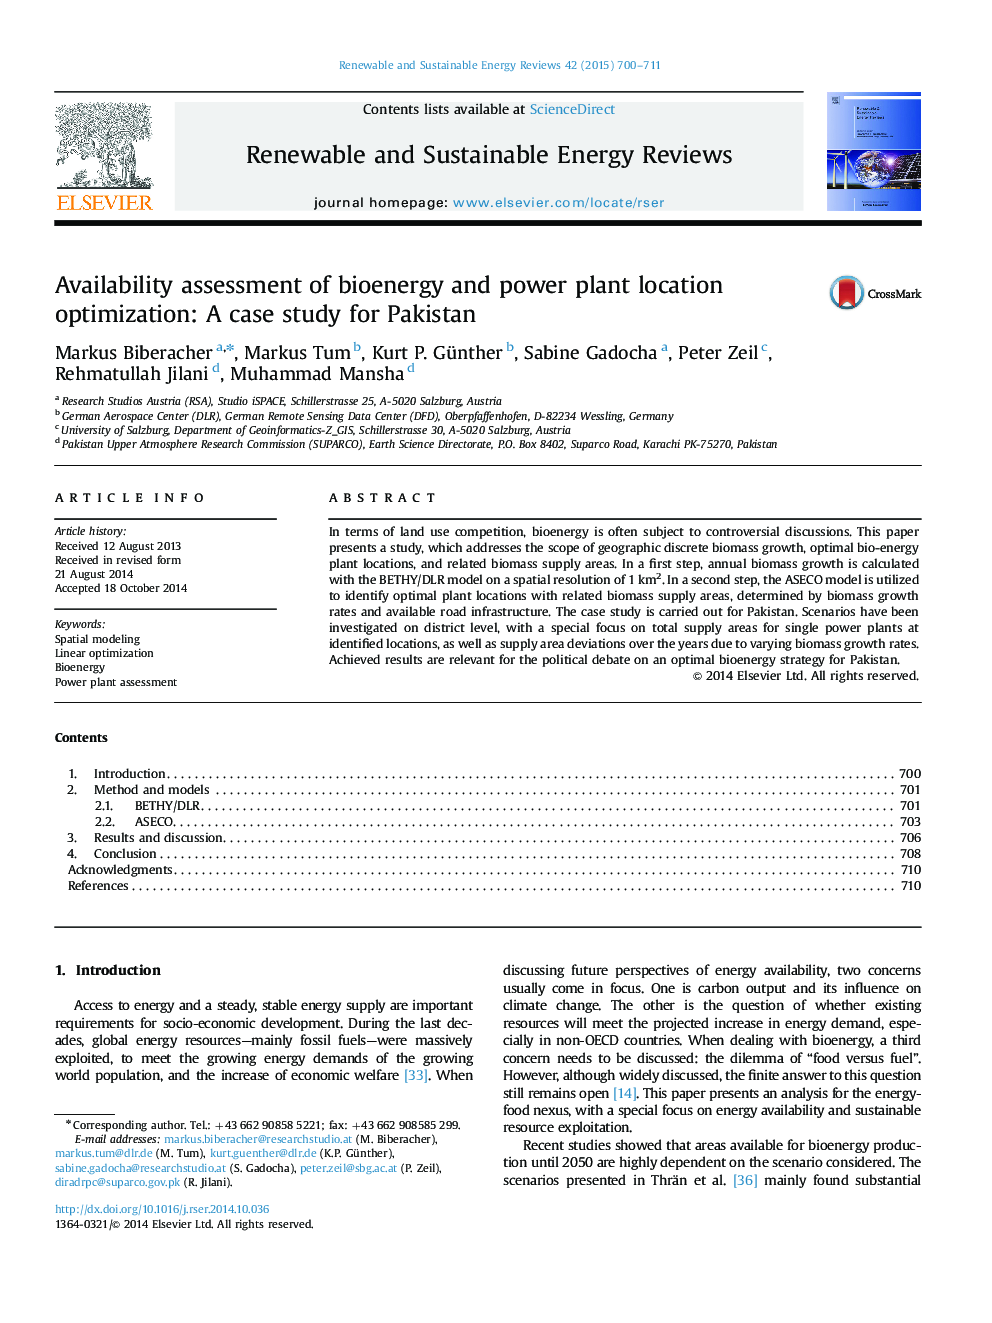 ارزیابی قابلیت بهینه سازی موقعیت زیست انرژی و نیروگاه: یک مطالعه مورد برای پاکستان 